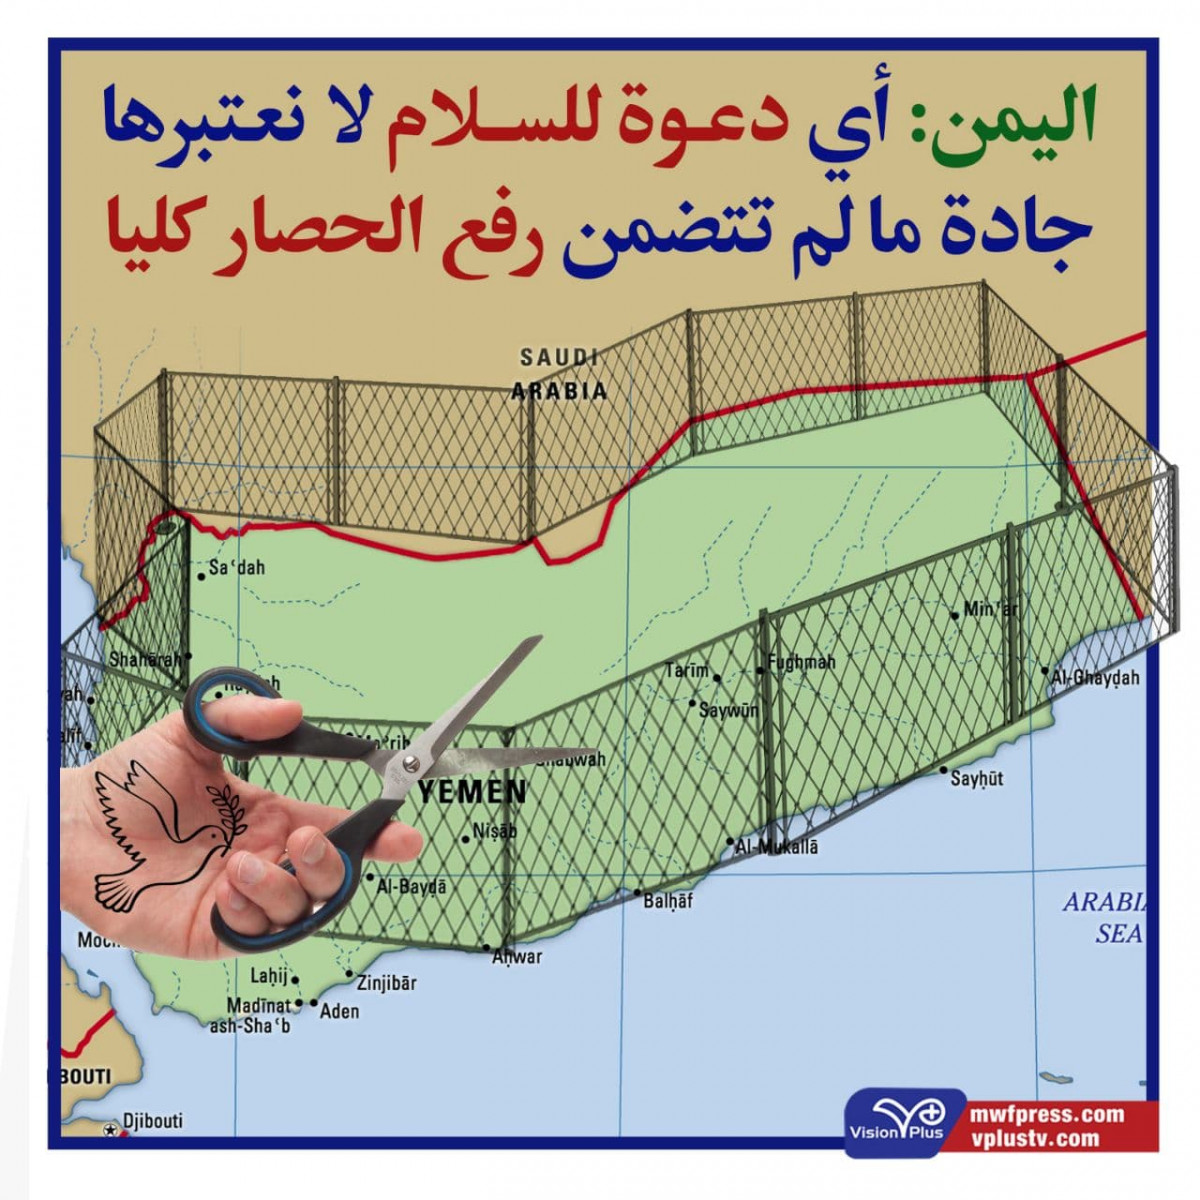 اليمن: أي دعوة للسلام لا نعتبرها جادة ما لم تتضمن رفع الحصار كليا